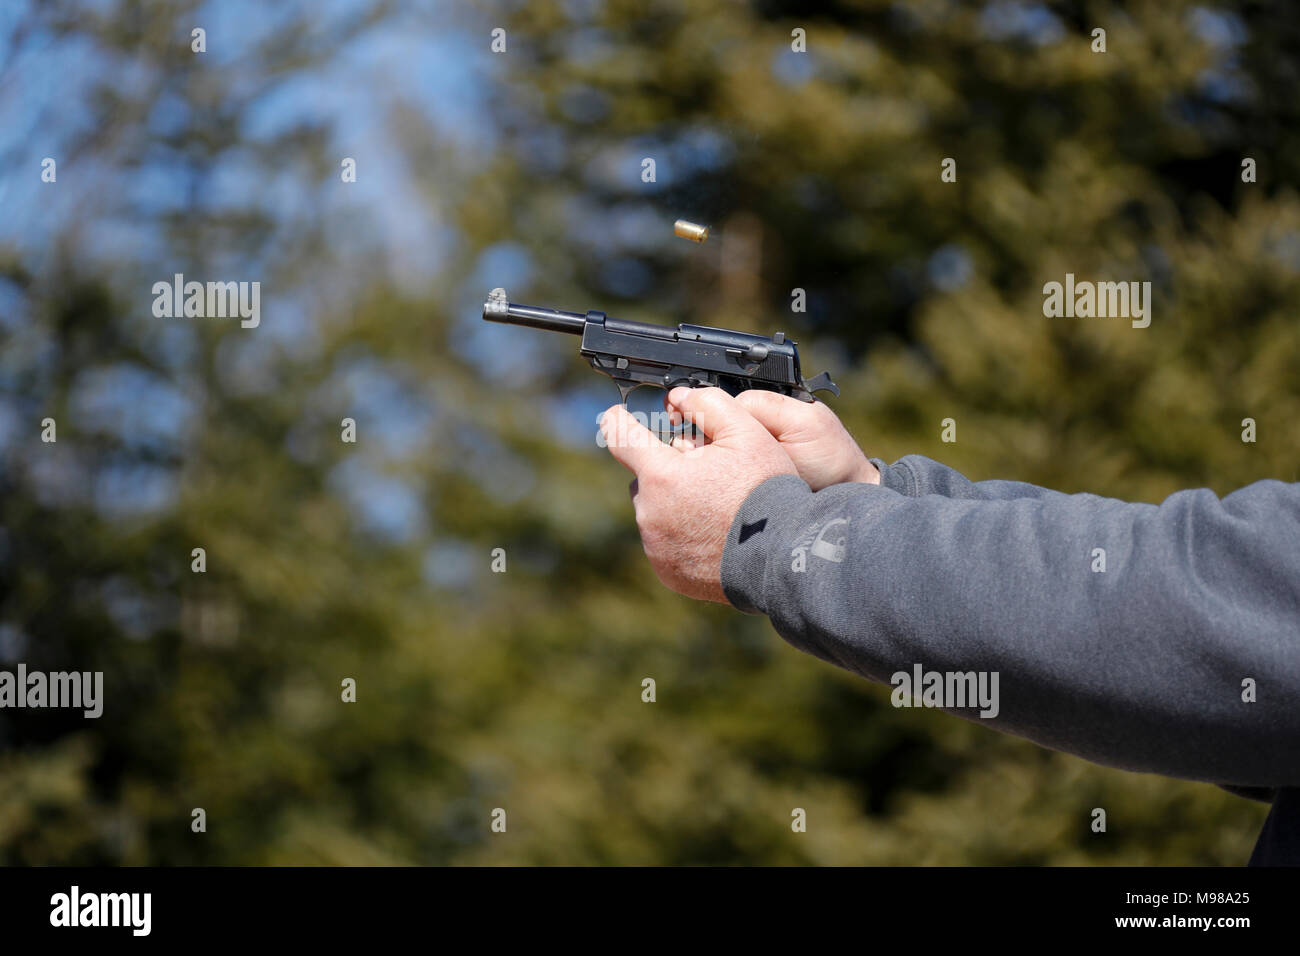 Nahaufnahme einer Pistole abgefeuert wurde und die ausgeworfene Shell wird in der Luft sichtbar. Stockfoto